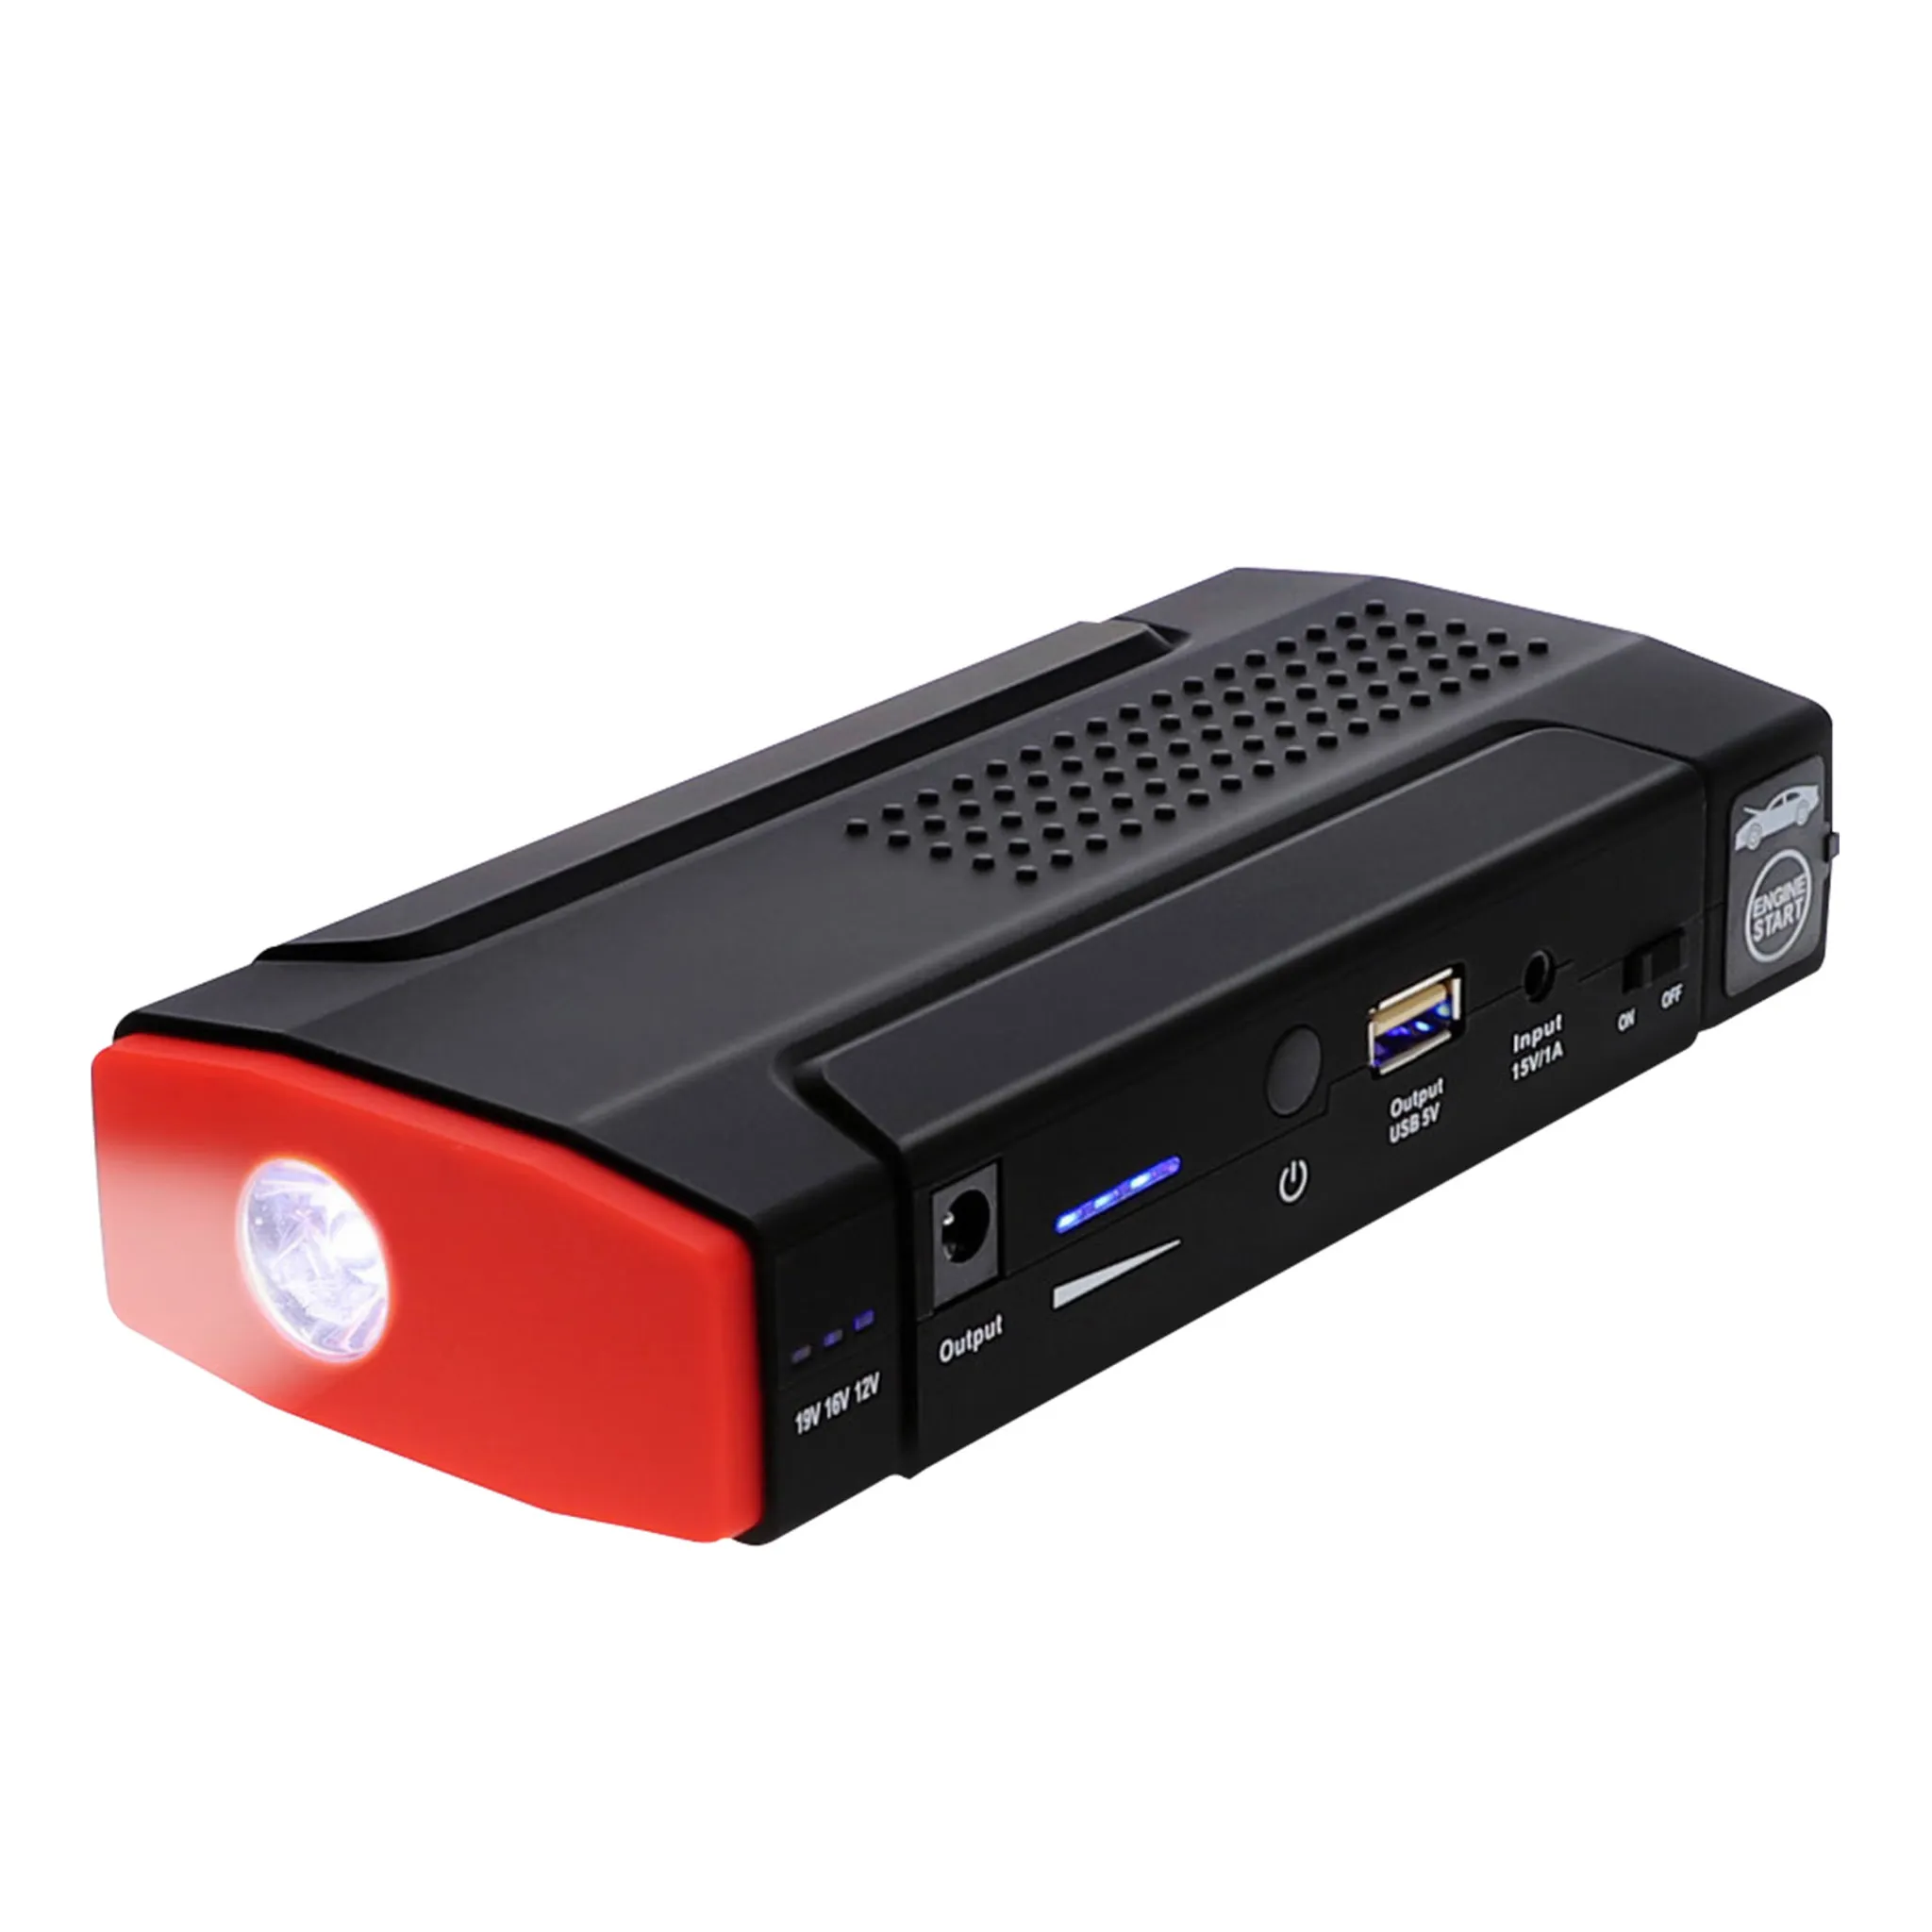 Kraftmax QC3000 Jumpstarter mit Powerbank- und Taschenlampenfunktion